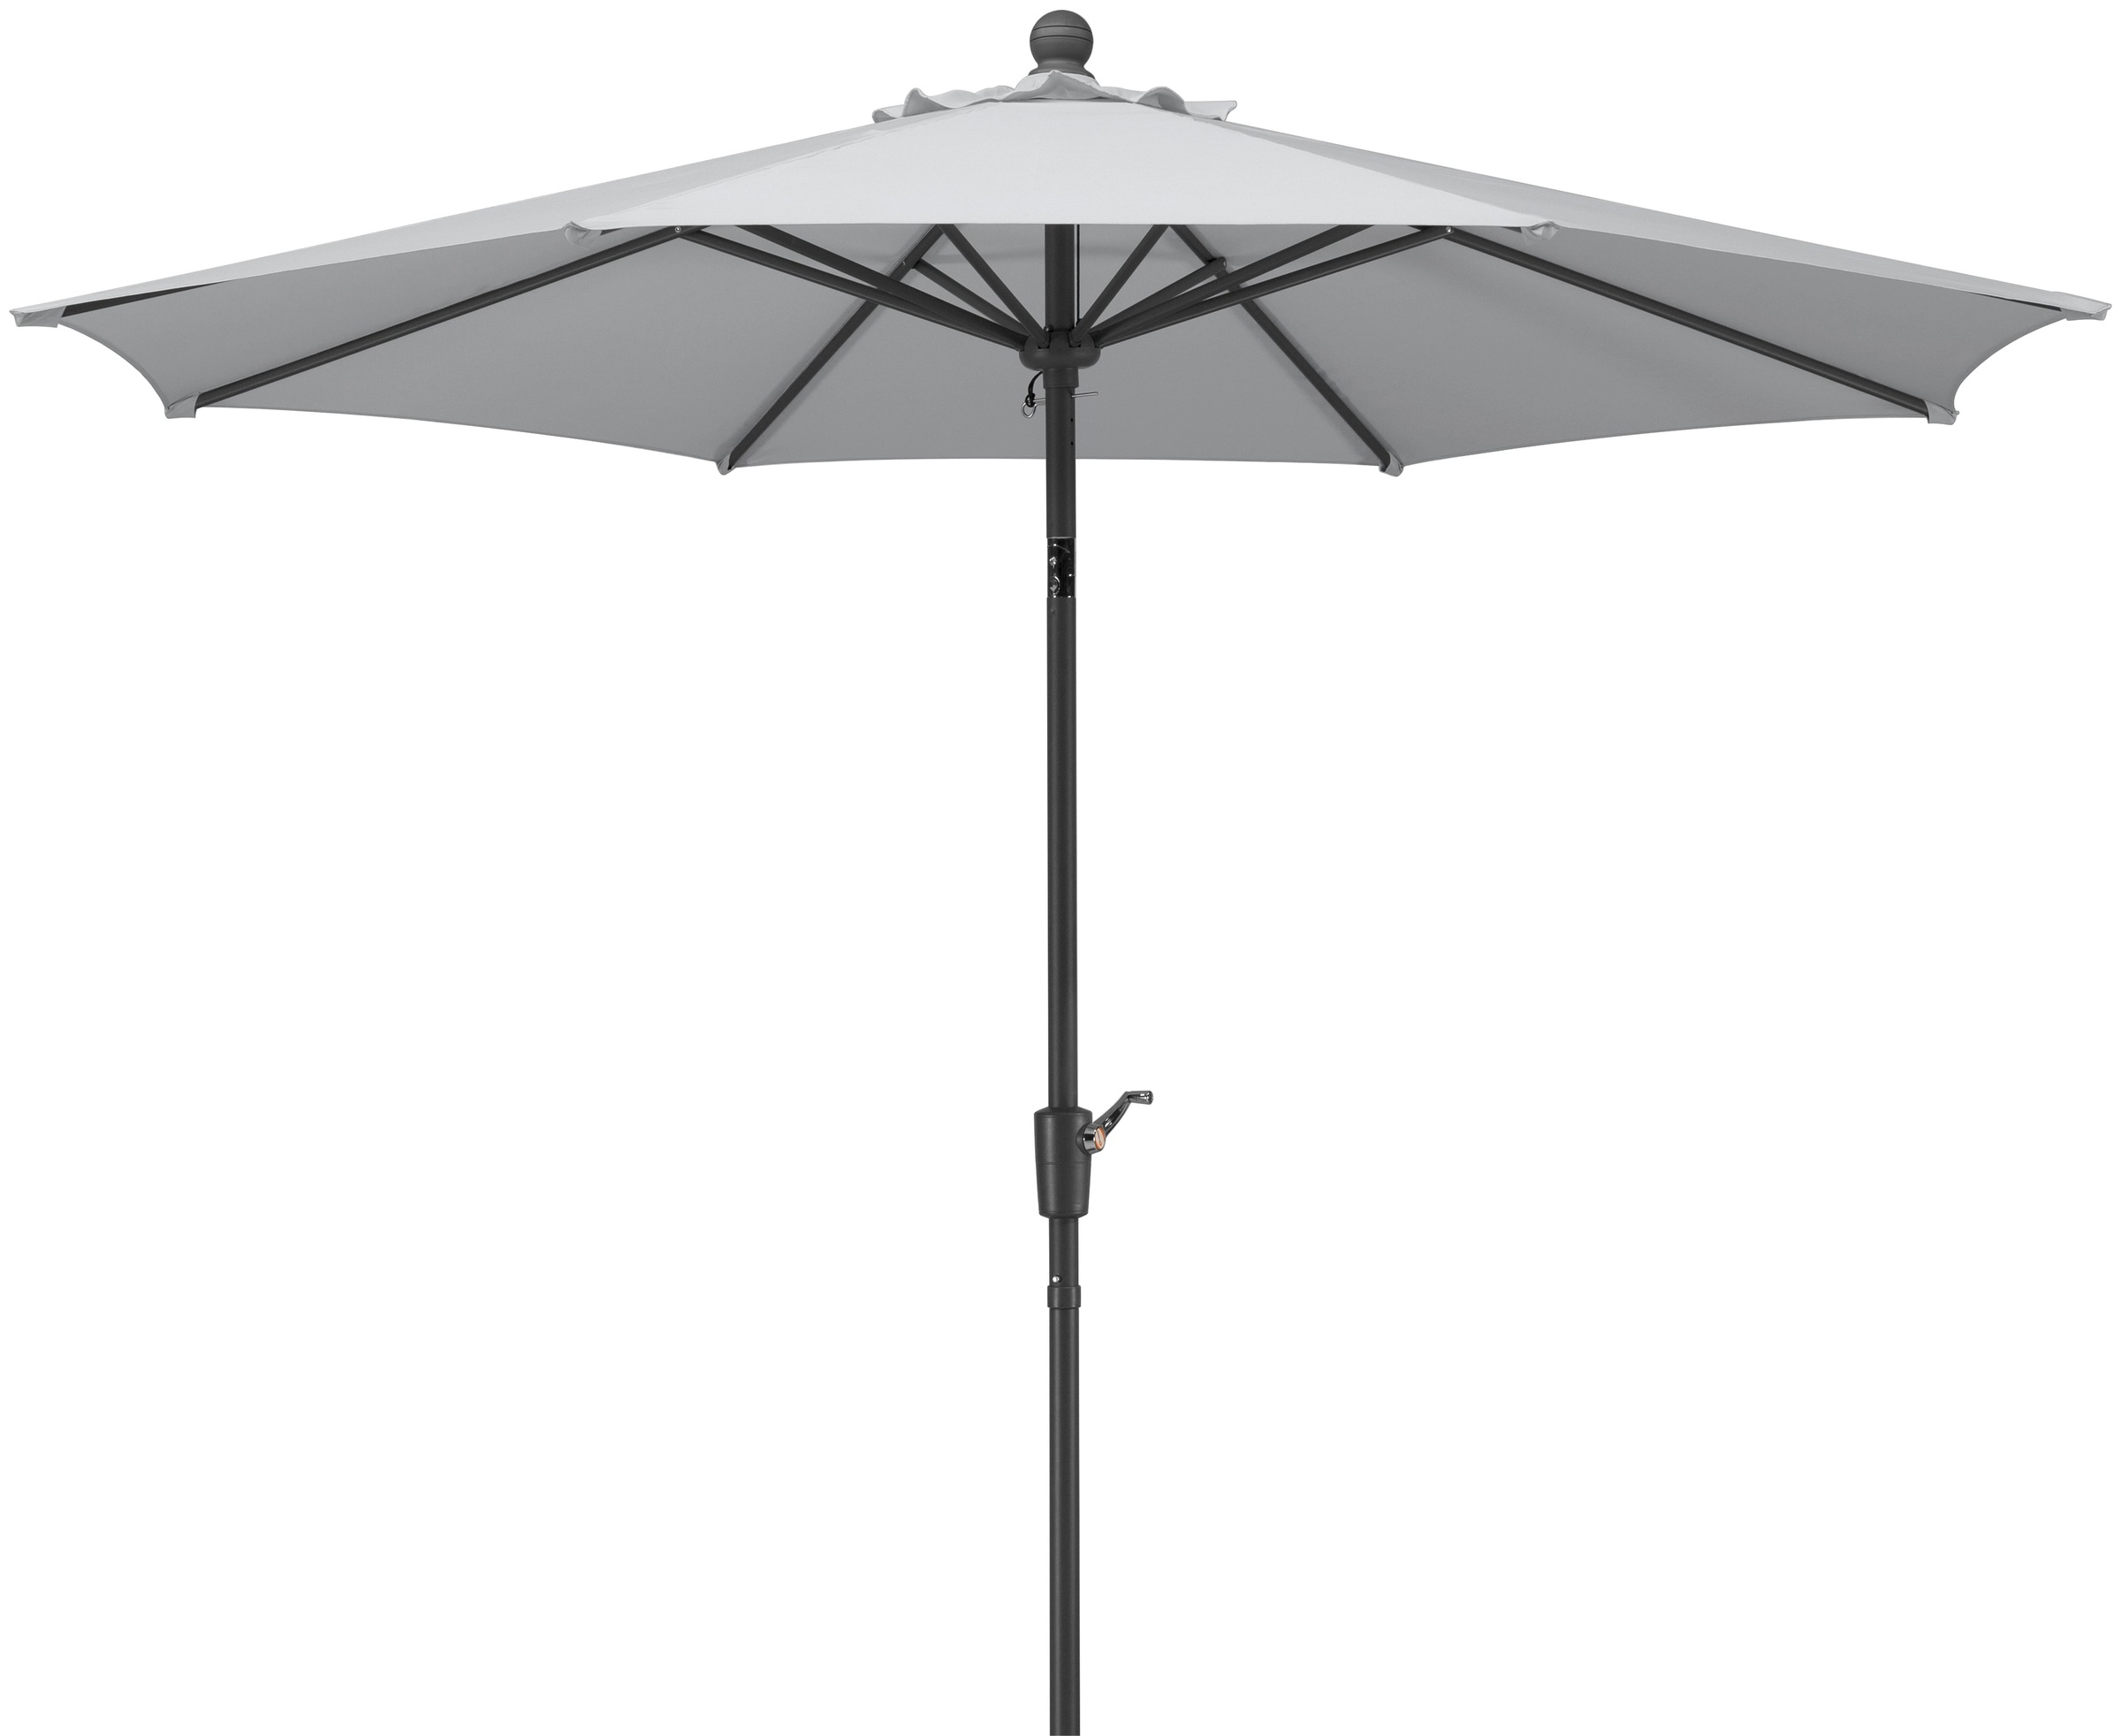 Schneider Schirme Marktschirm »Harlem«, Durchmesser 270 cm, silbergrau, rund, ohne Schirmständer